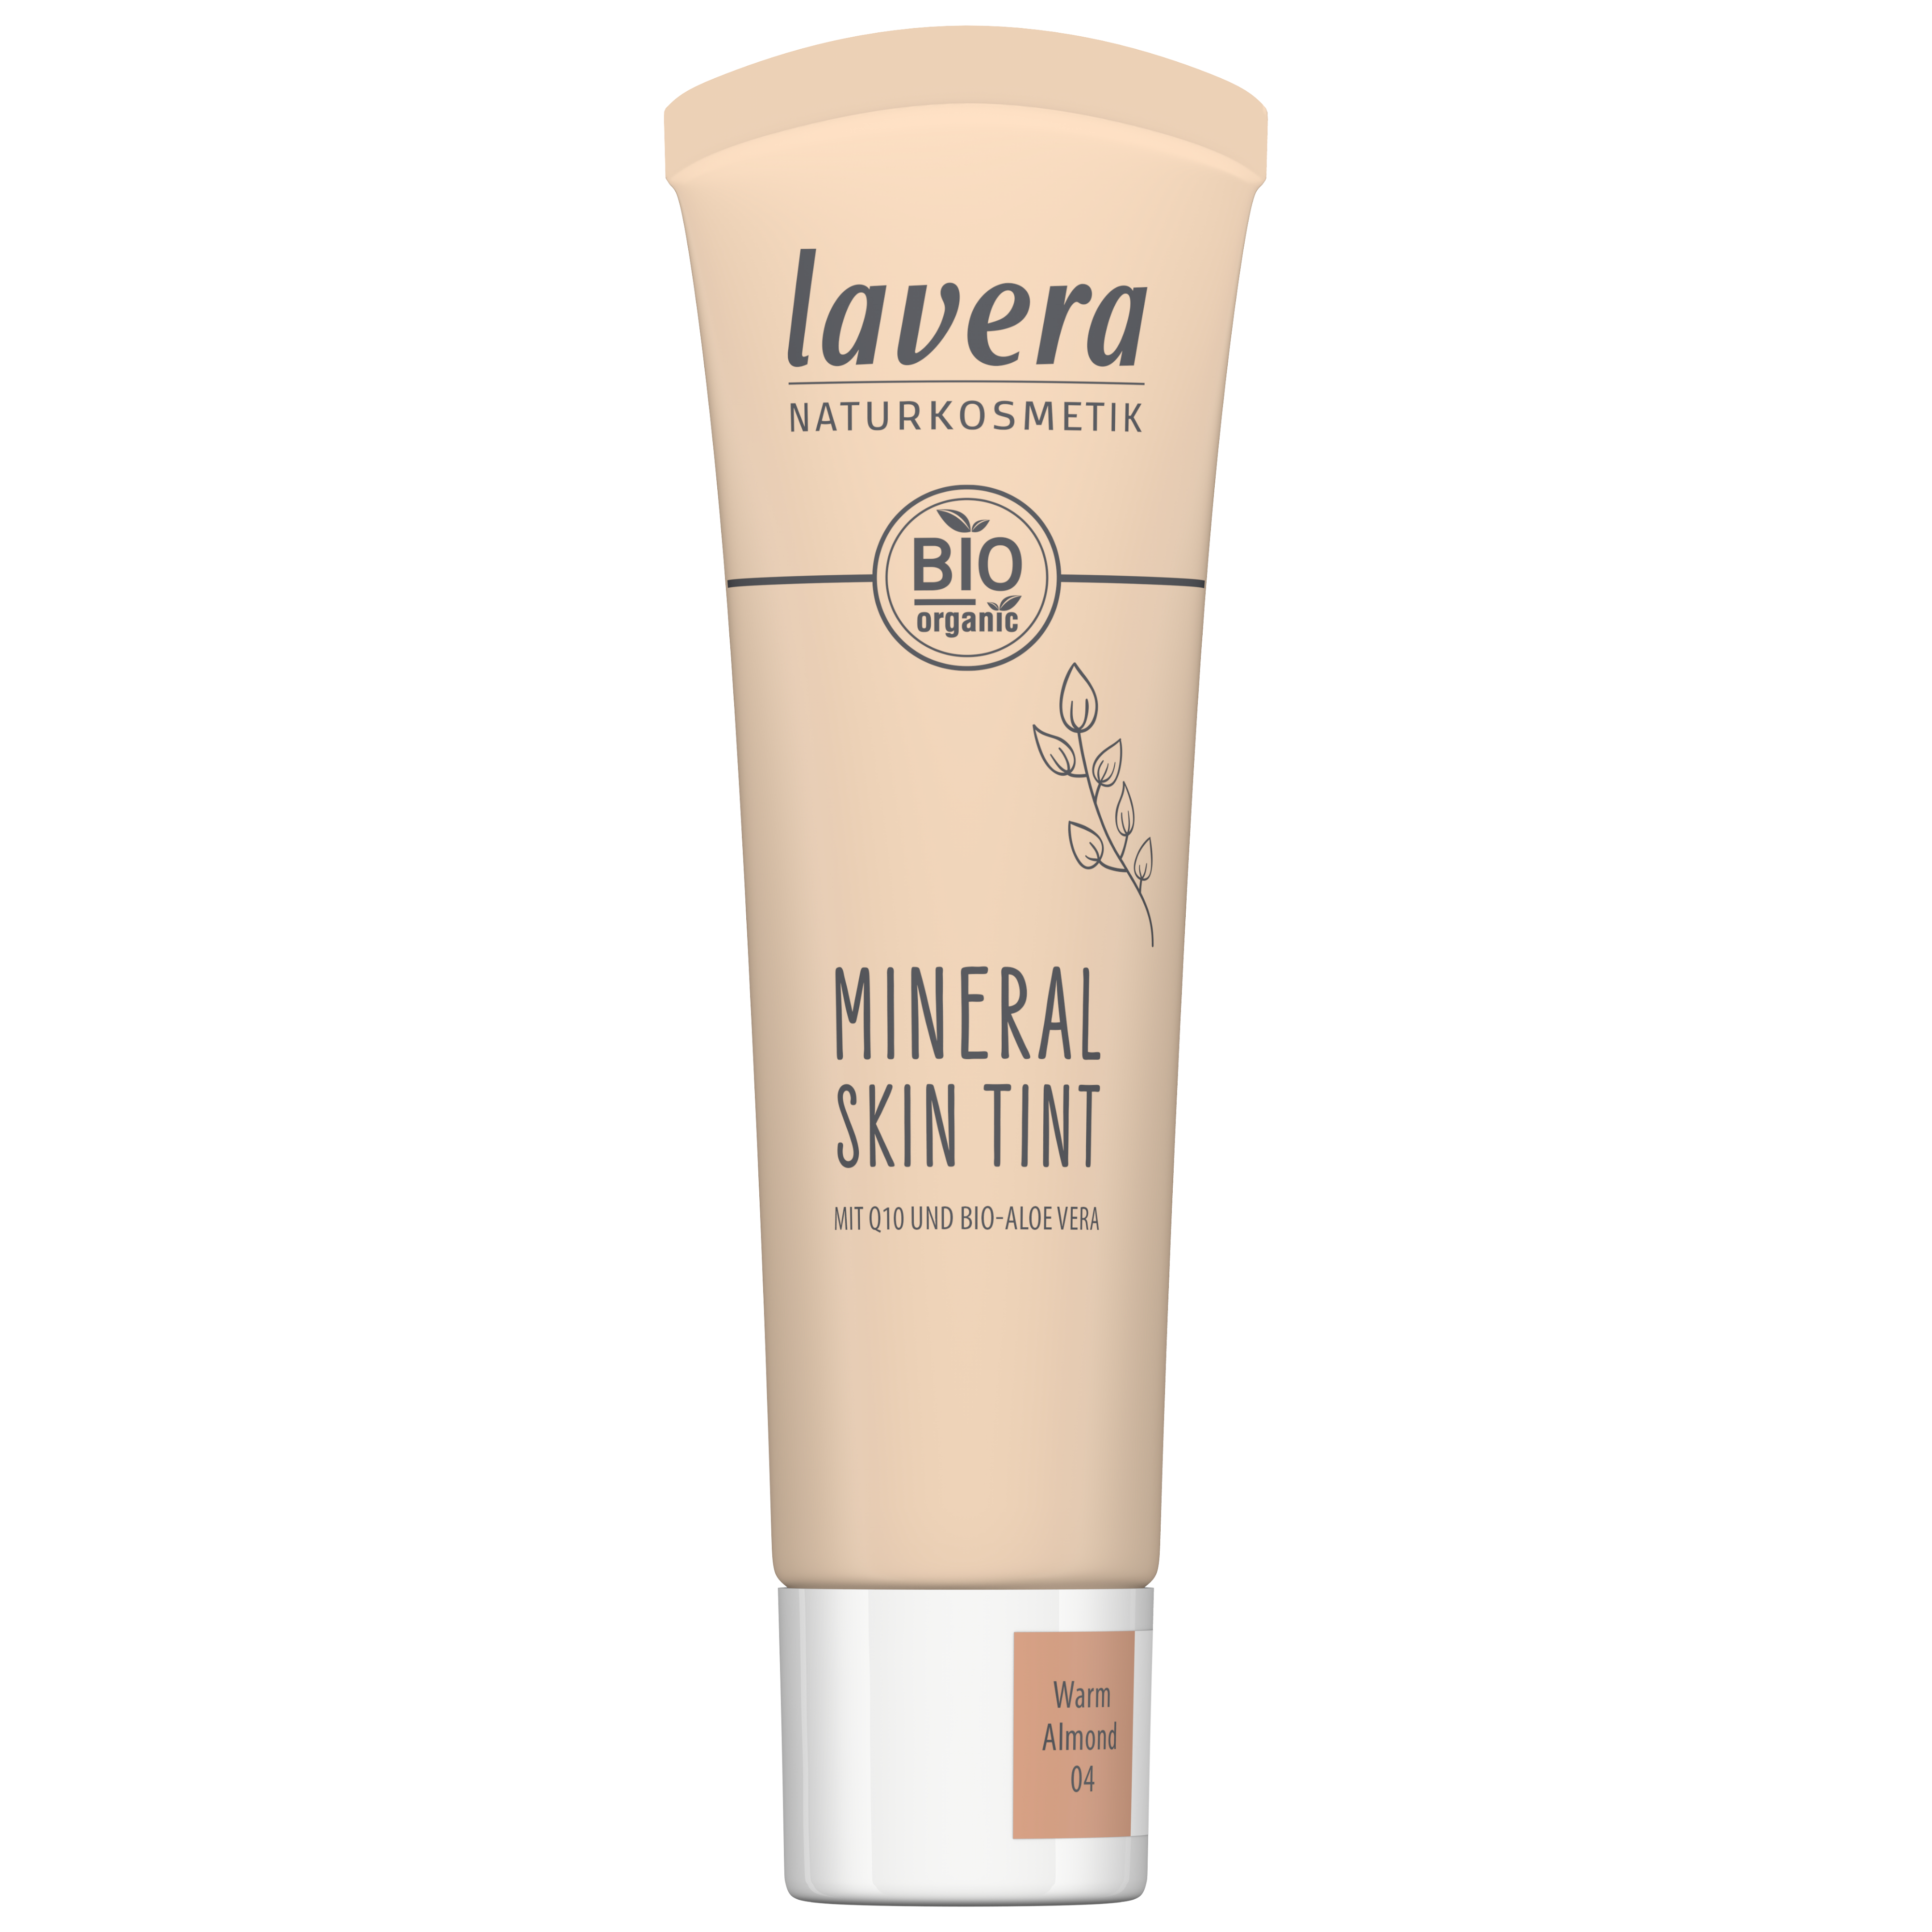 Lavera Mineral Skin Tint -Warm Almond 04